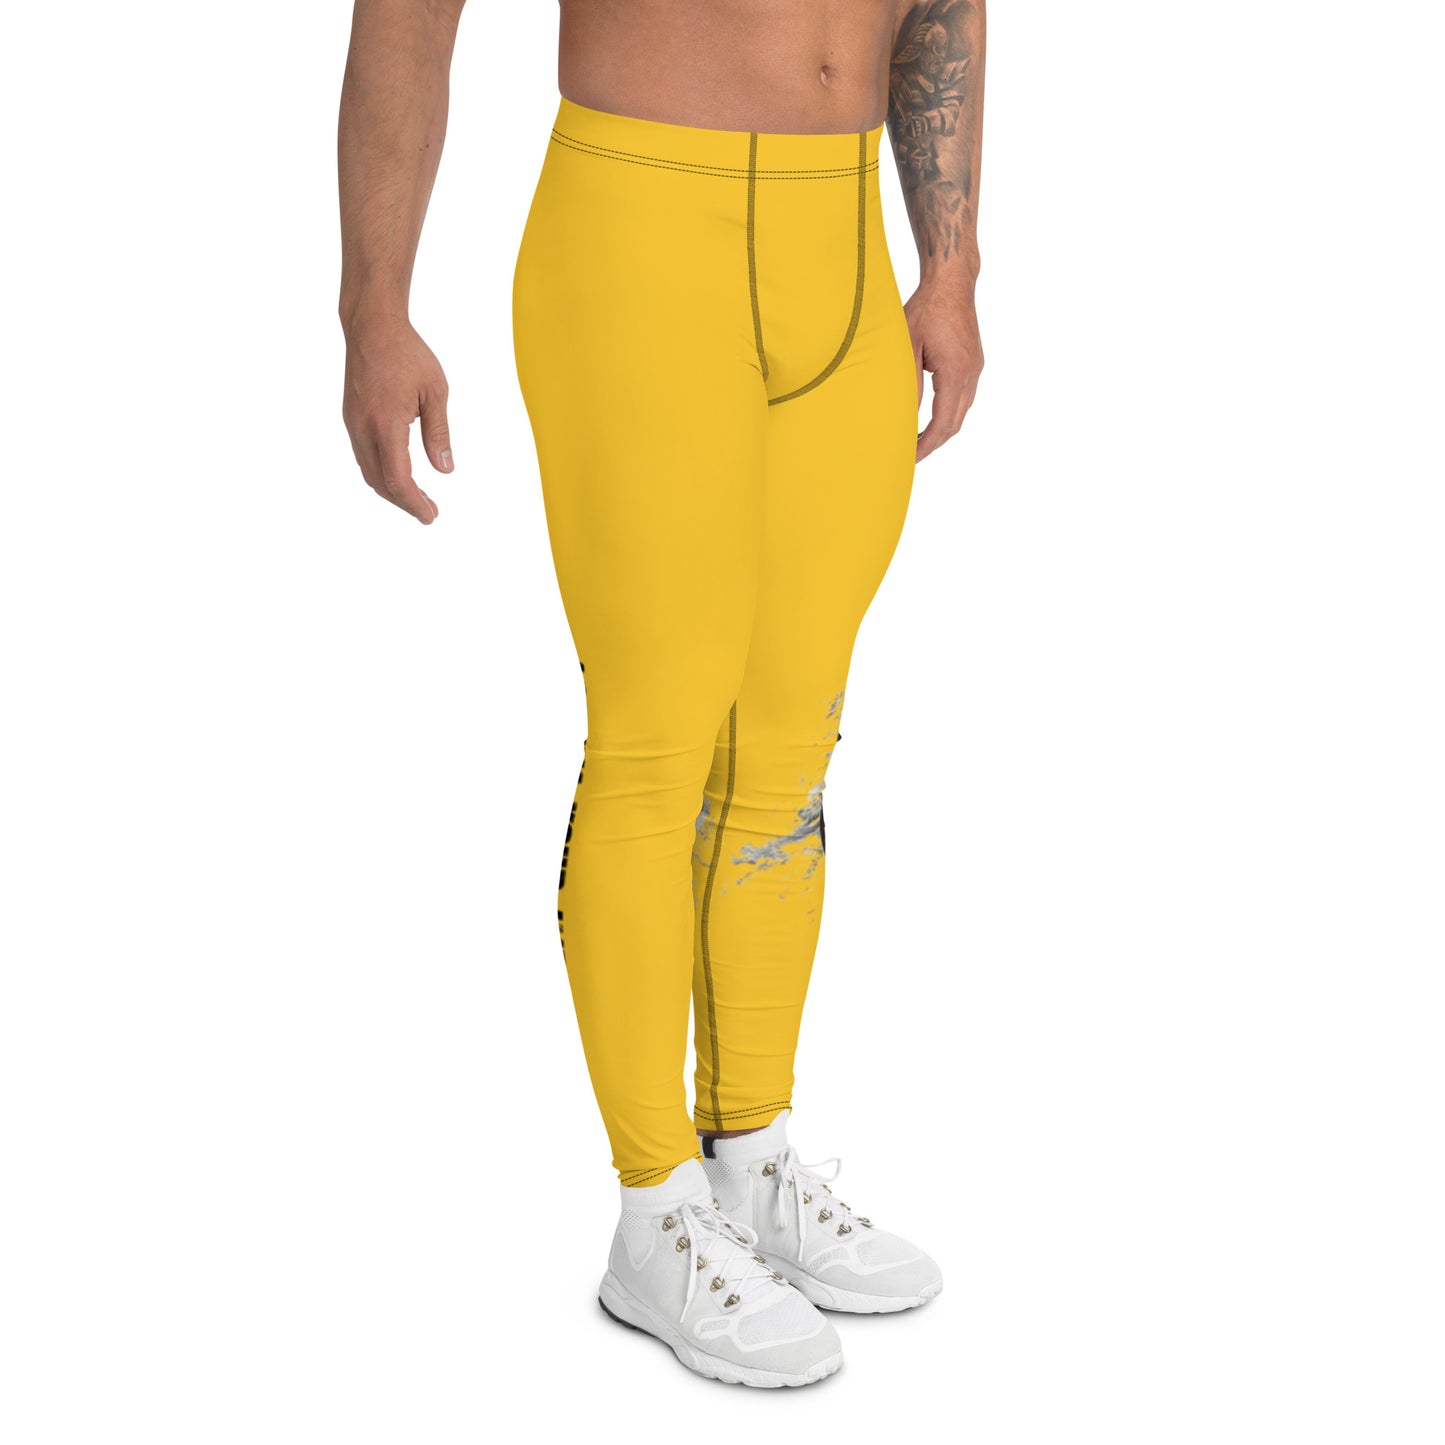 yellow Men's leggings